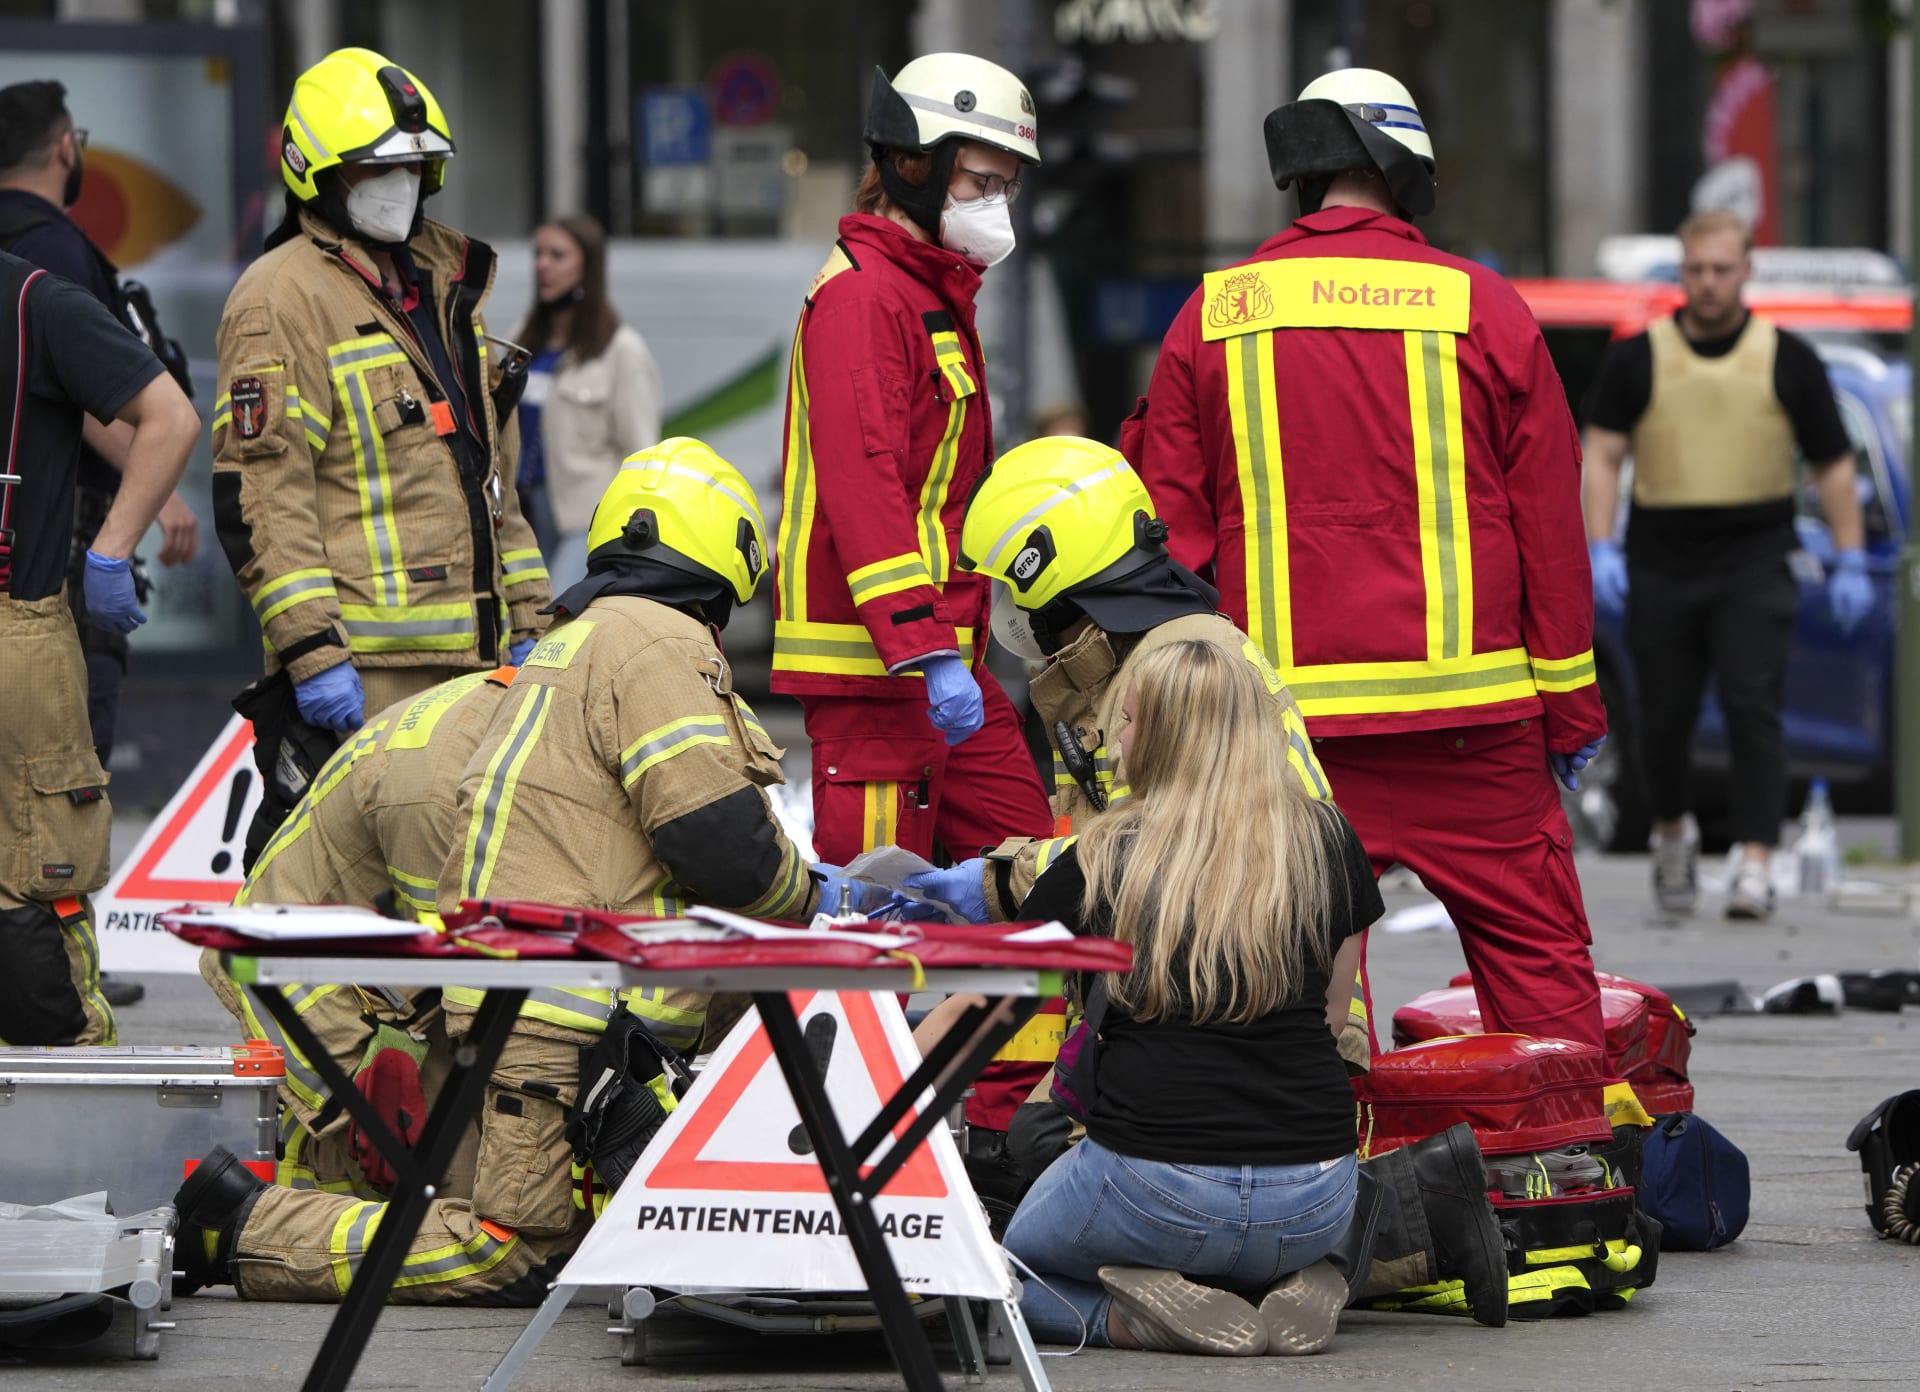  Záchranáři pomáhají zraněnému po nárazu auta do davu lidí v centru Berlína.